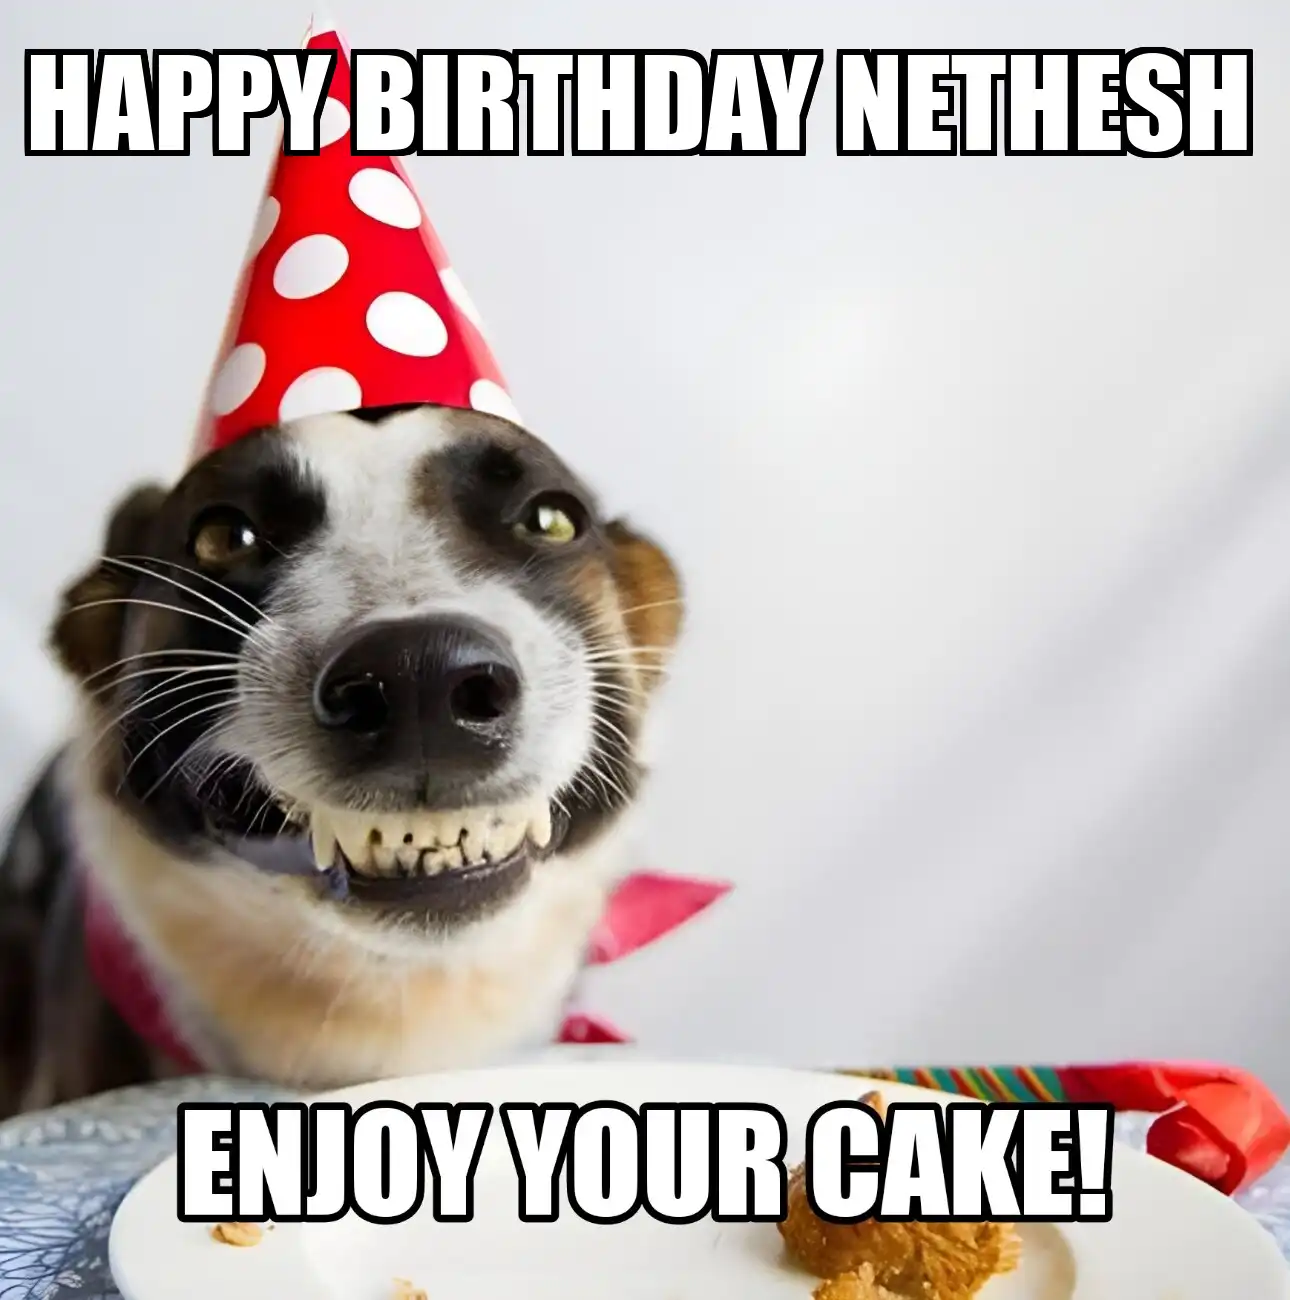 Happy Birthday Nethesh Enjoy Your Cake Dog Meme